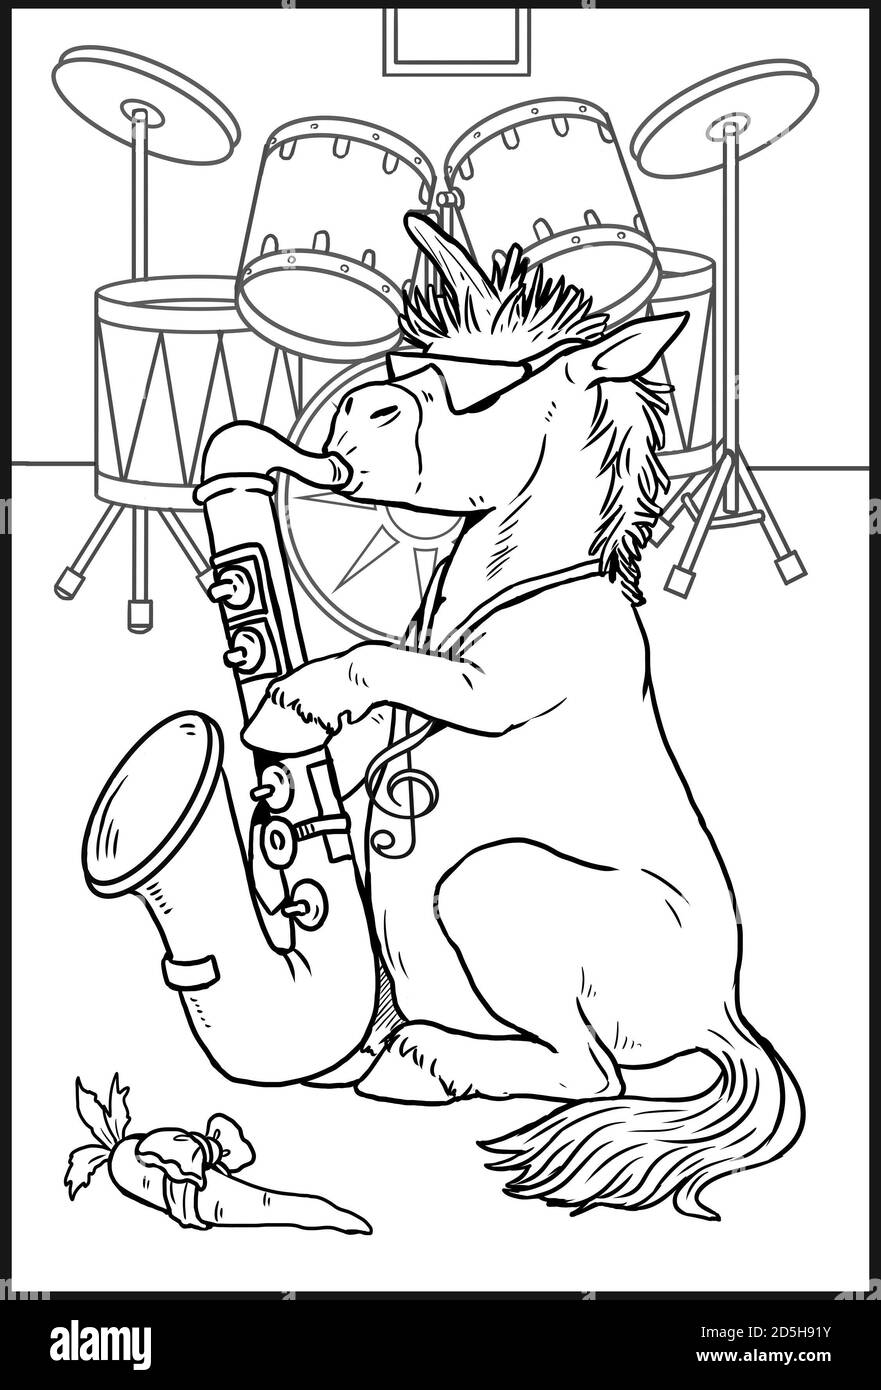 Drôle unicorn avec saxophone joue du jazz. Page de coloriage pour les enfants et les amateurs de chevaux. Banque D'Images